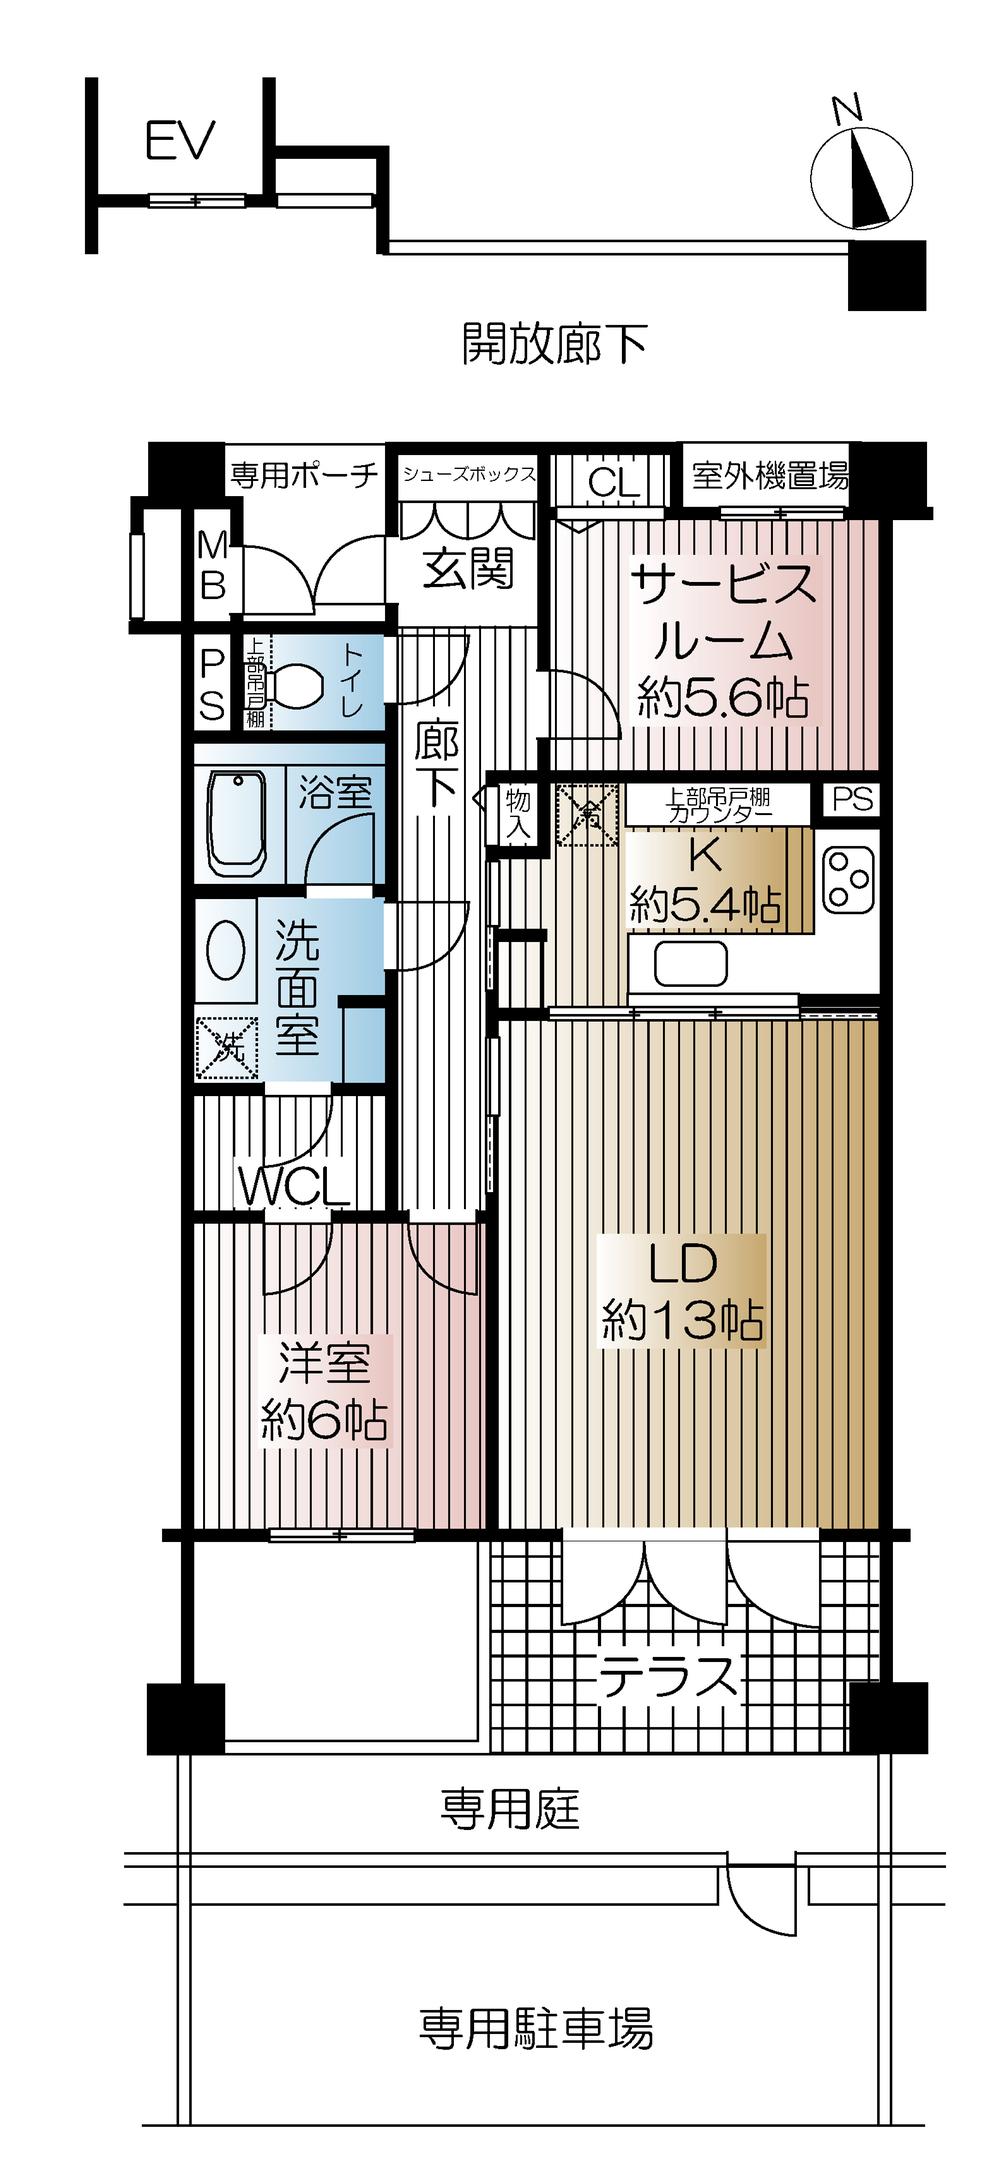 Floor plan. 1LDK + S (storeroom), Price 36,800,000 yen, Occupied area 71.42 sq m